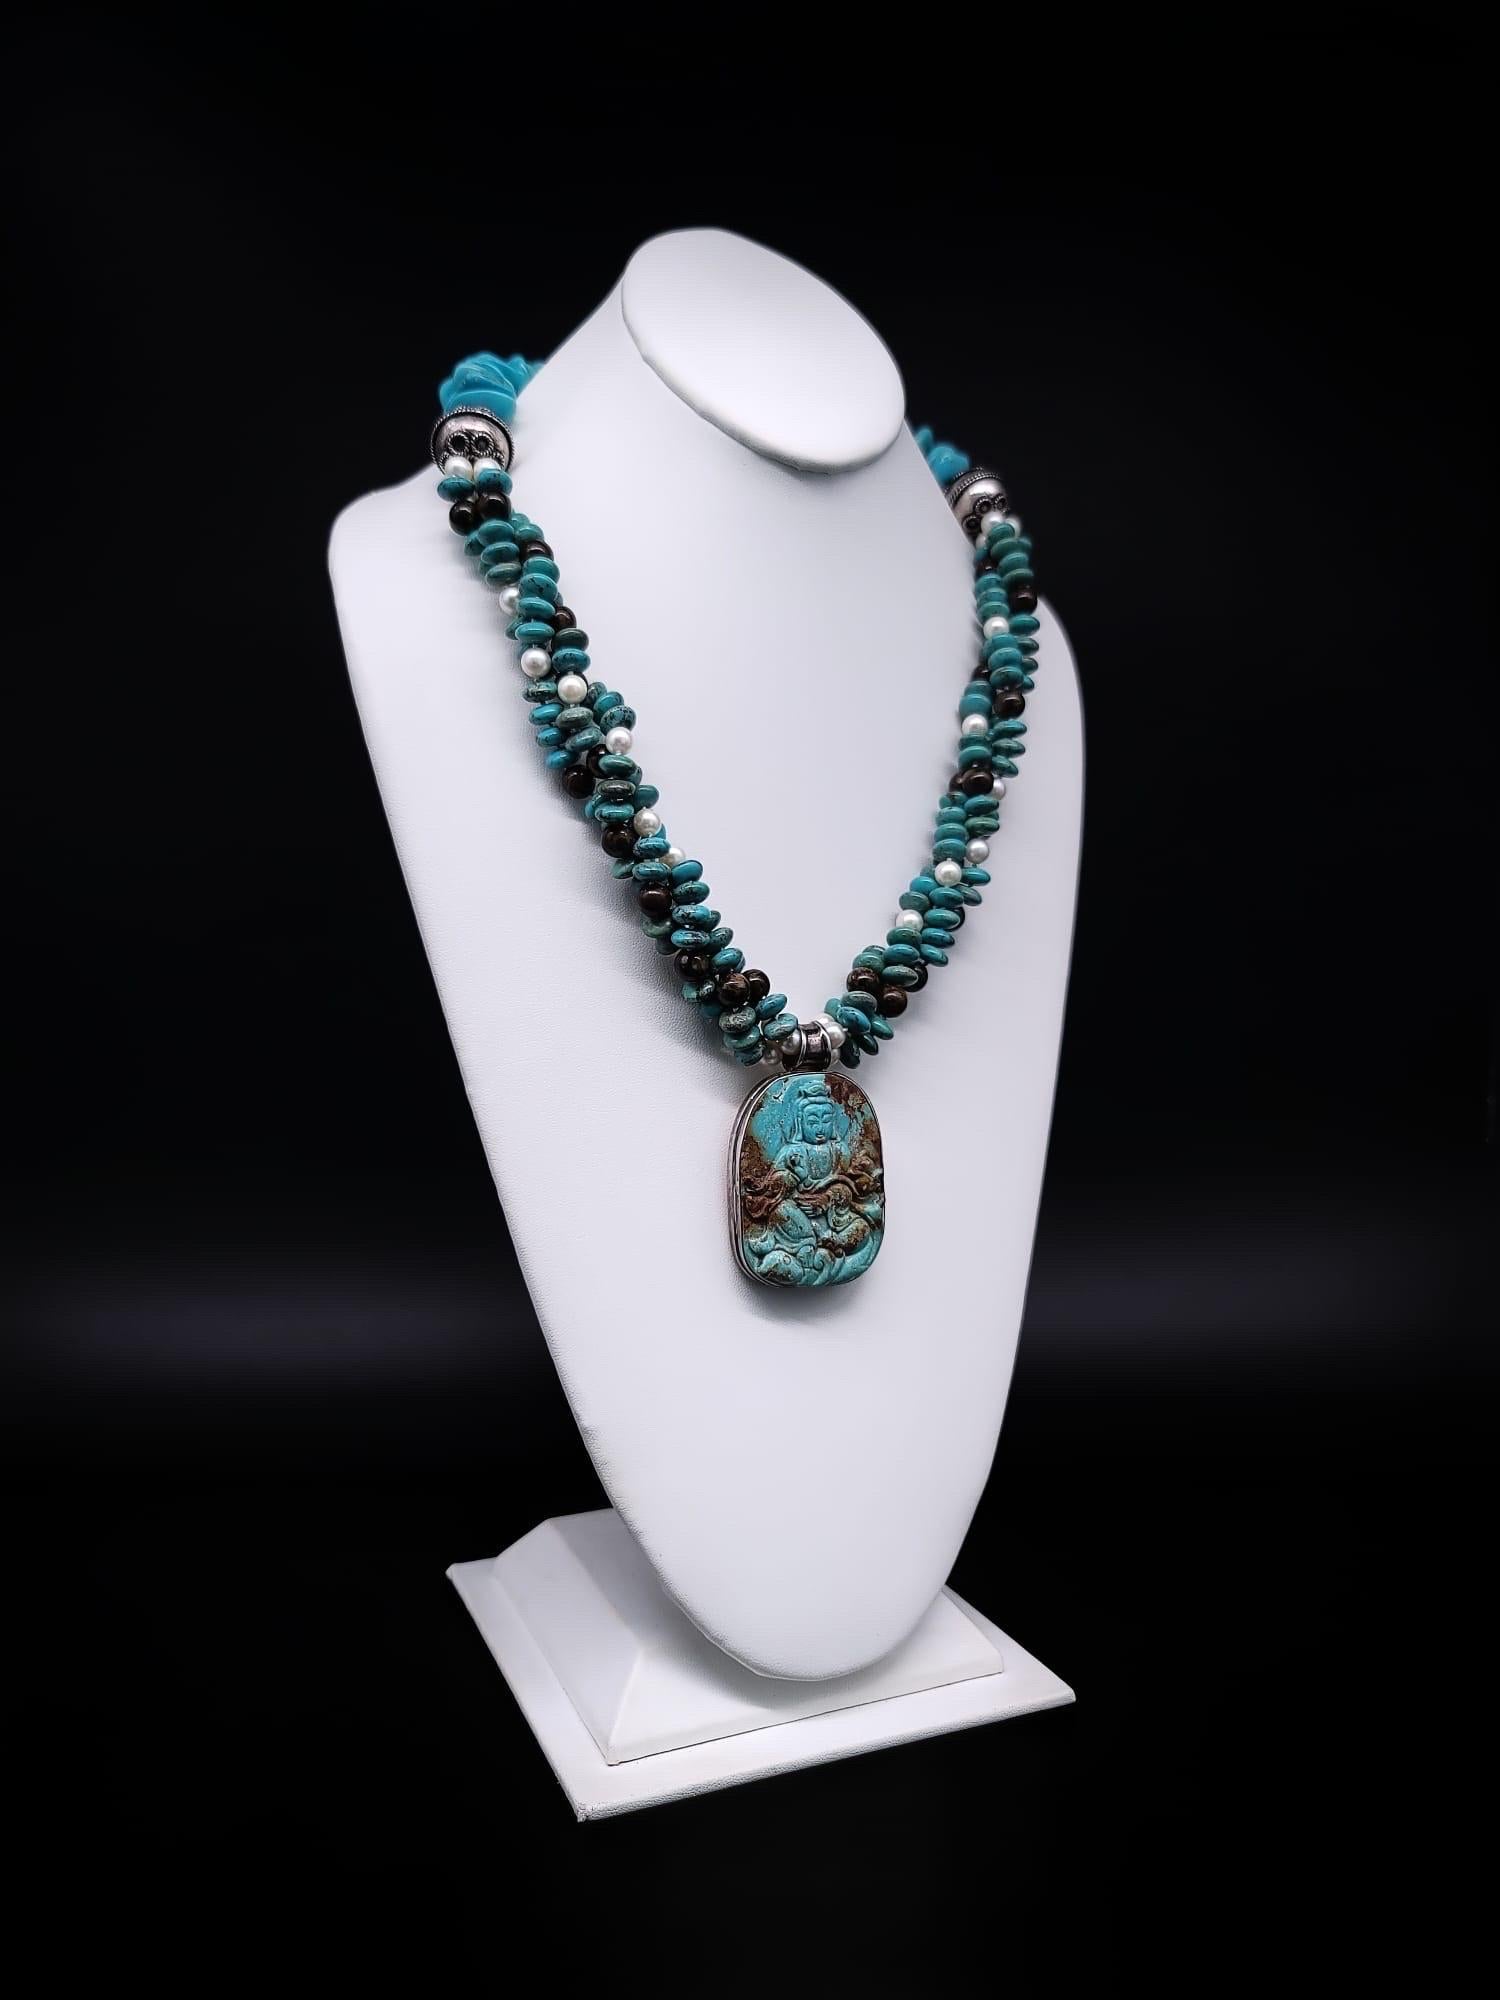 Rehaussez votre style estival avec cet extraordinaire collier à trois brins, un véritable chef-d'œuvre qui mêle harmonieusement des composants du monde entier. L'étonnante combinaison de turquoise, d'opale australienne et de perles d'eau douce de 8